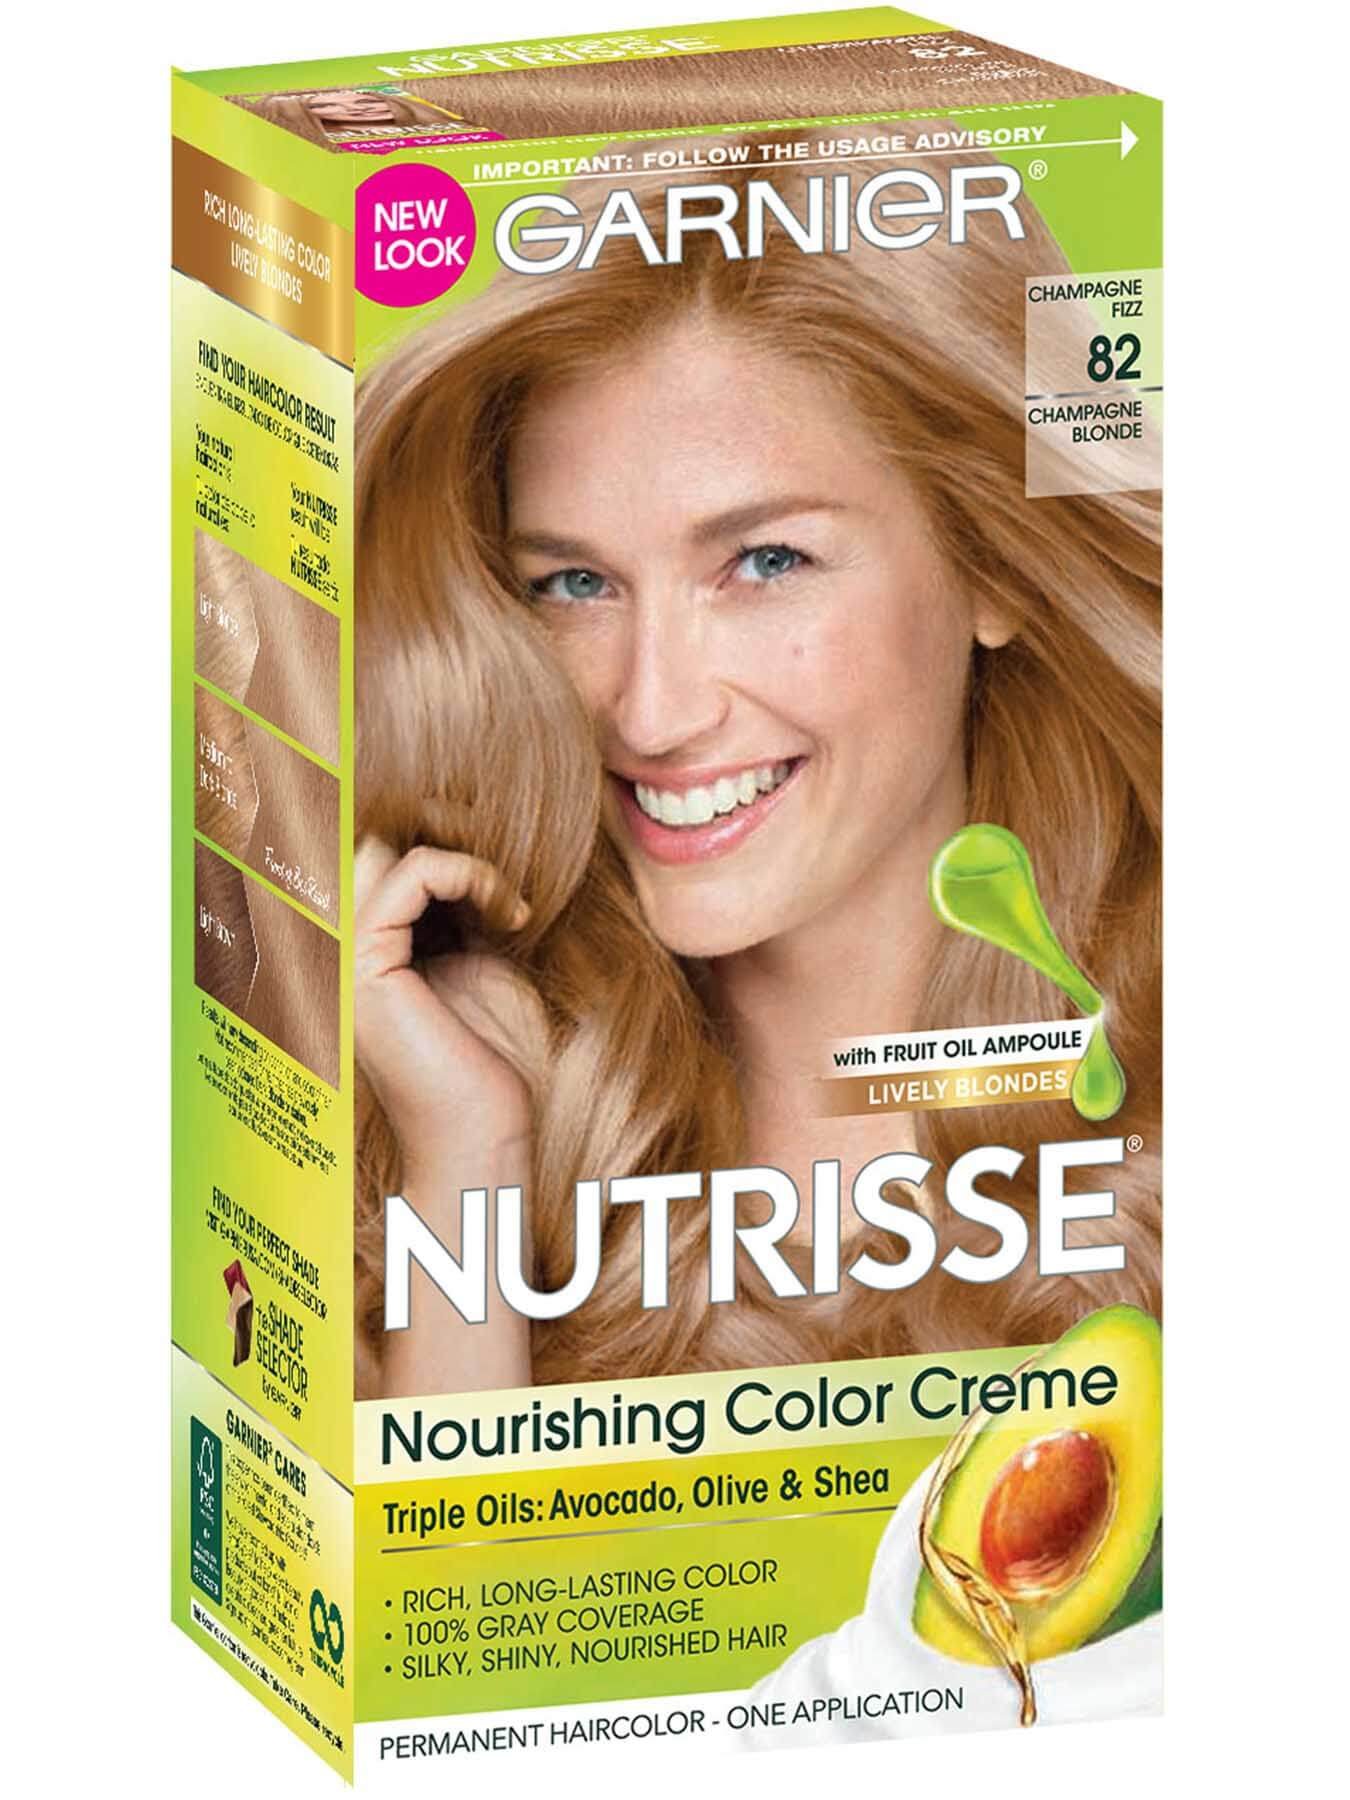 Nutrisse Ultra Color Blonde ~ 51 Hq Photos Garnier Nutrisse Blonde Hair ...